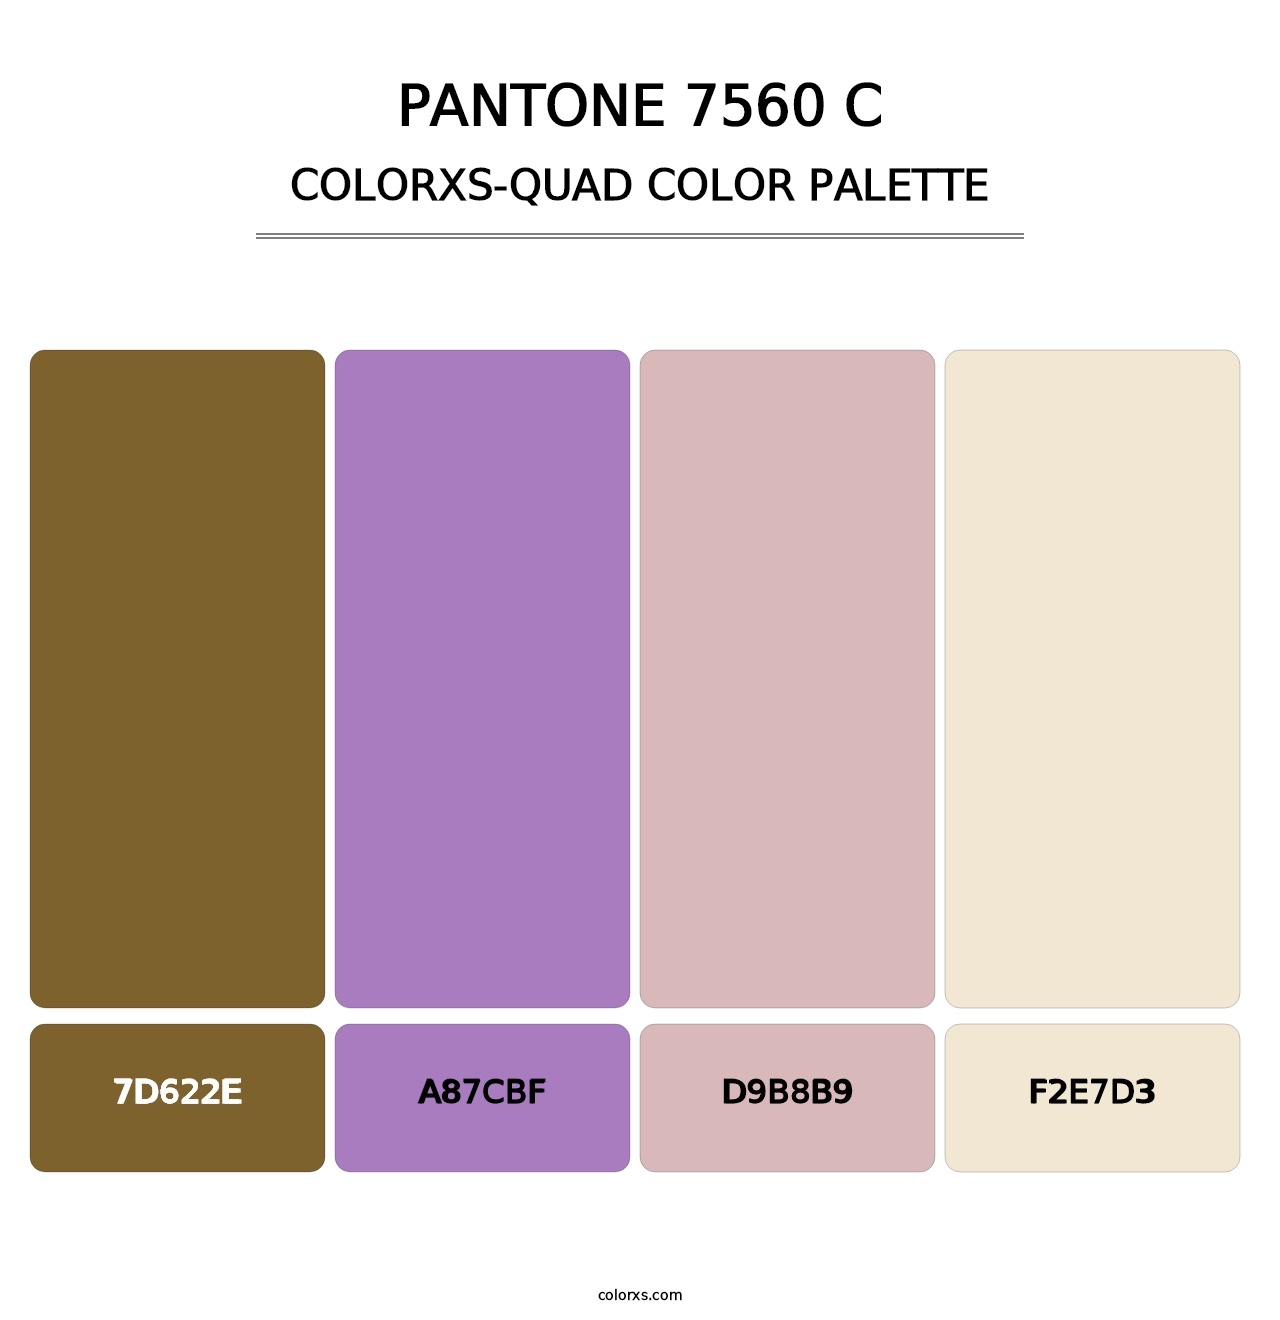 PANTONE 7560 C - Colorxs Quad Palette